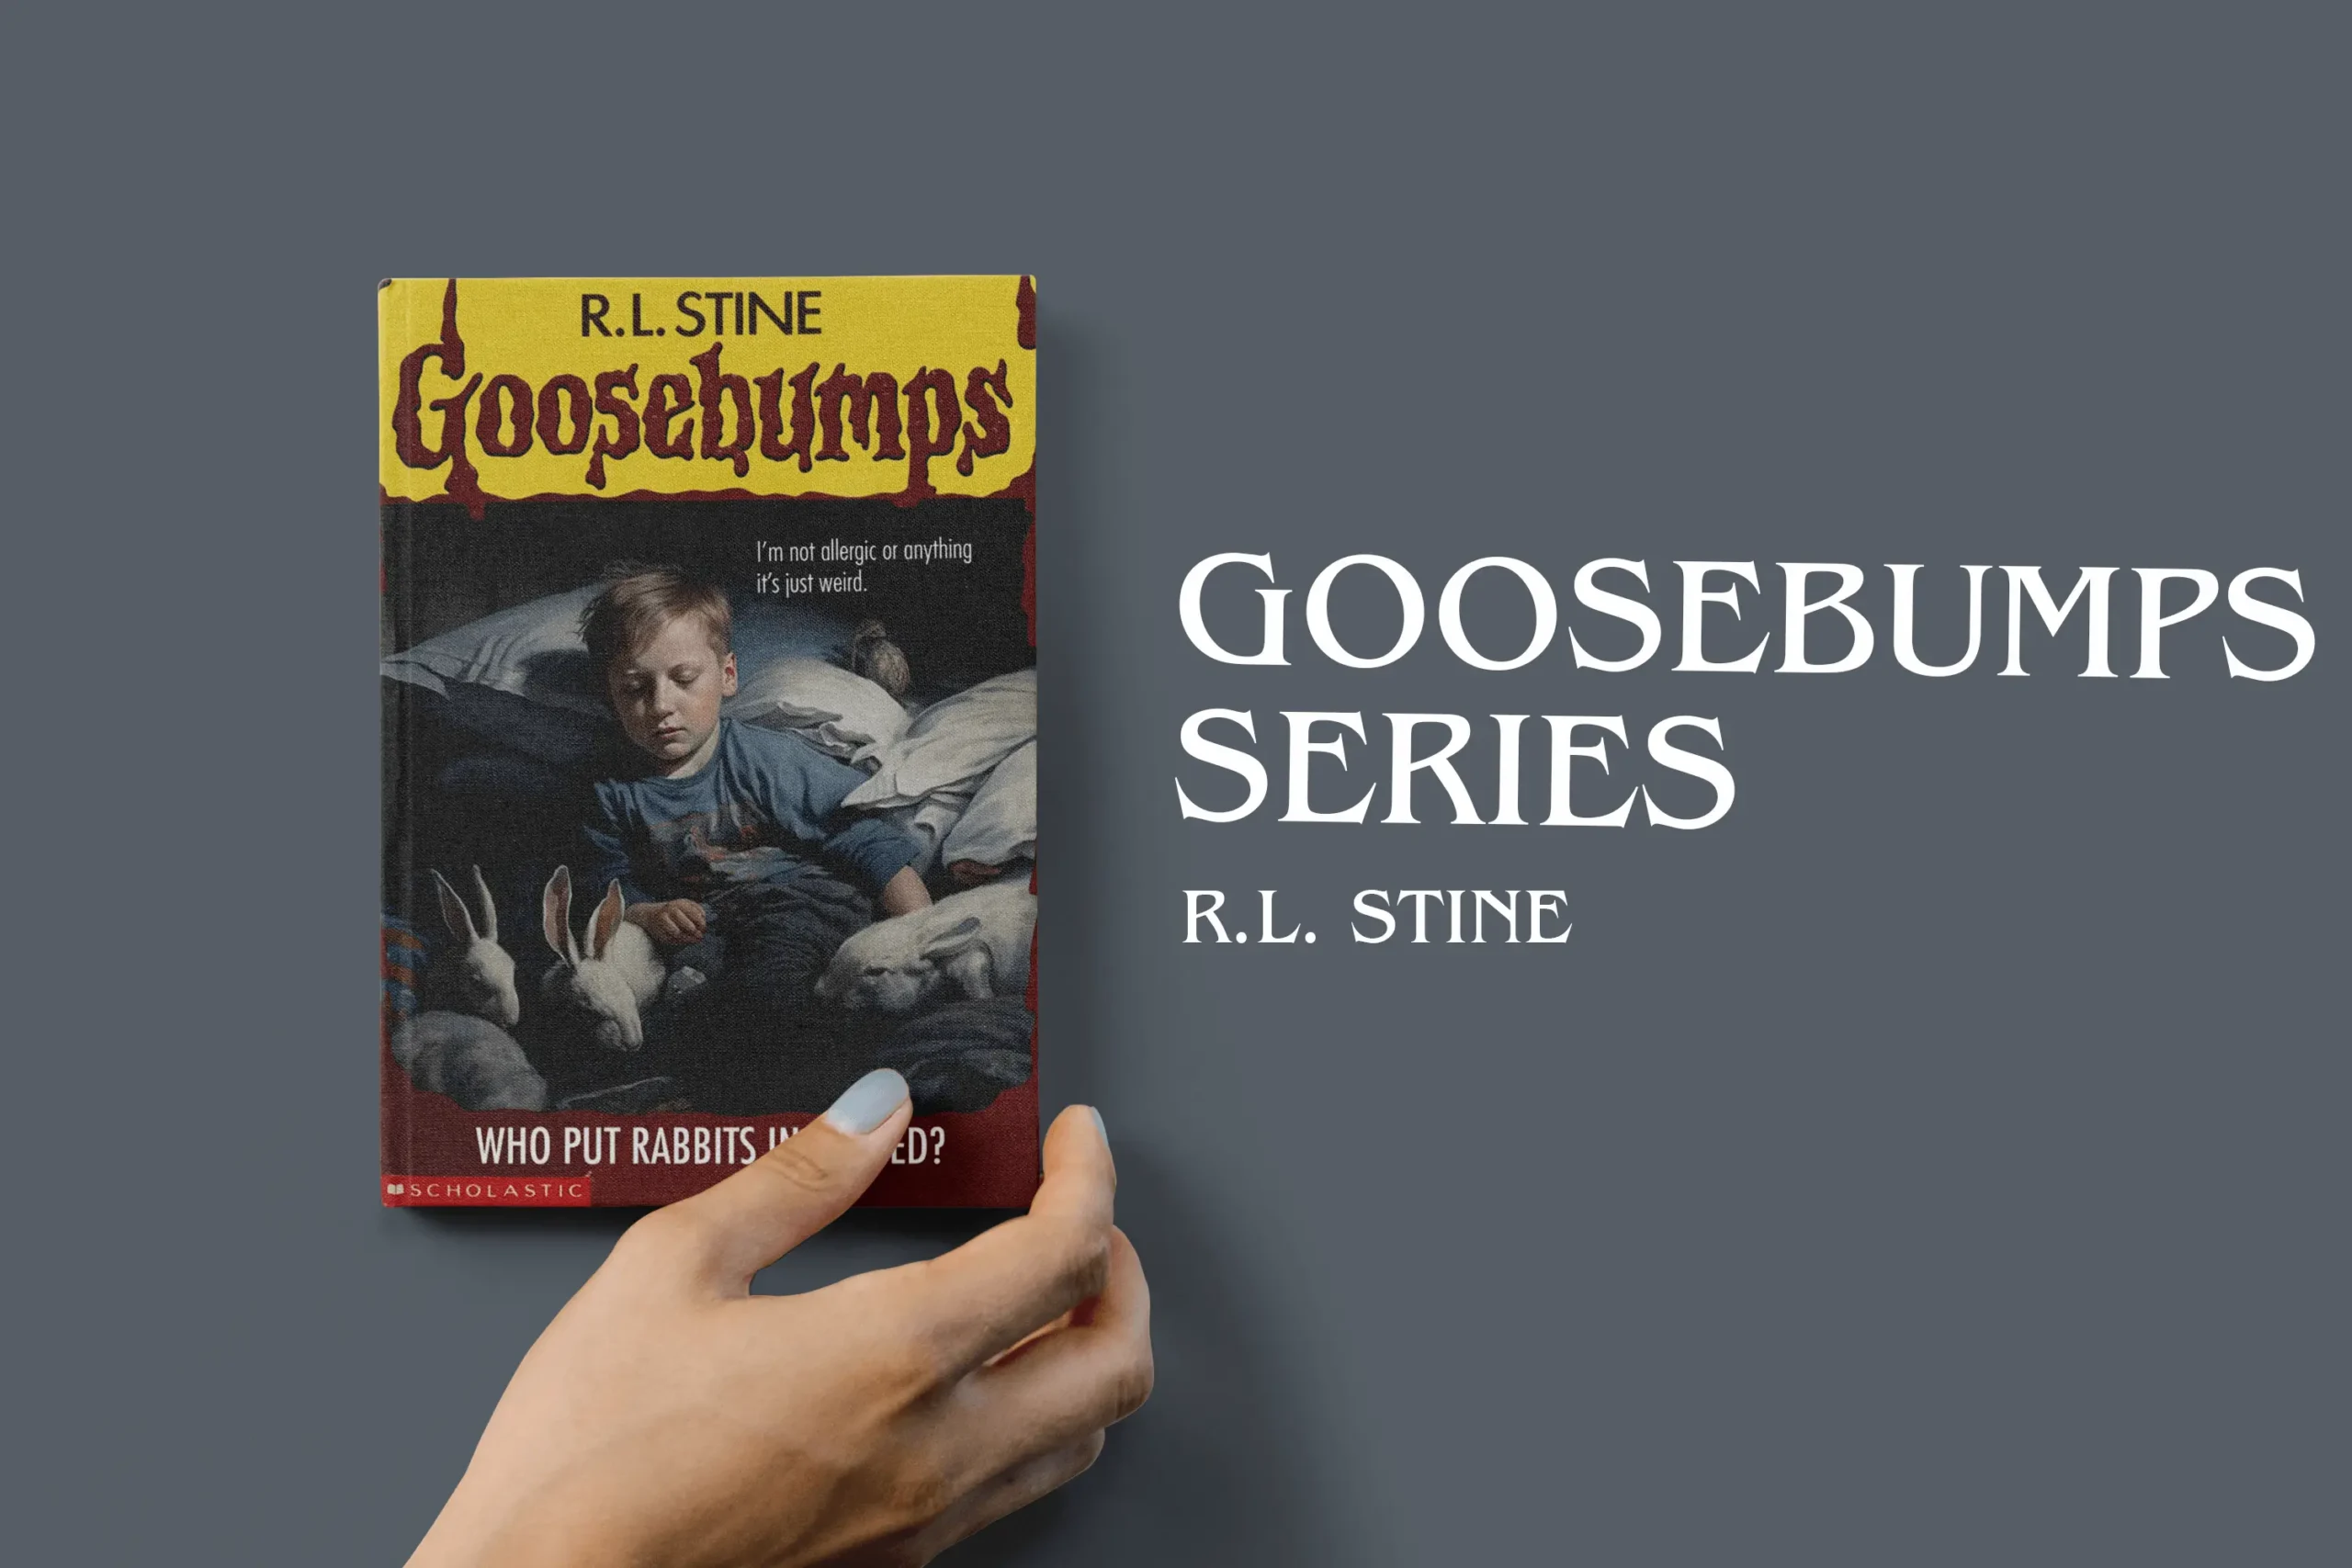 Goosebumps series by R.L. Stine